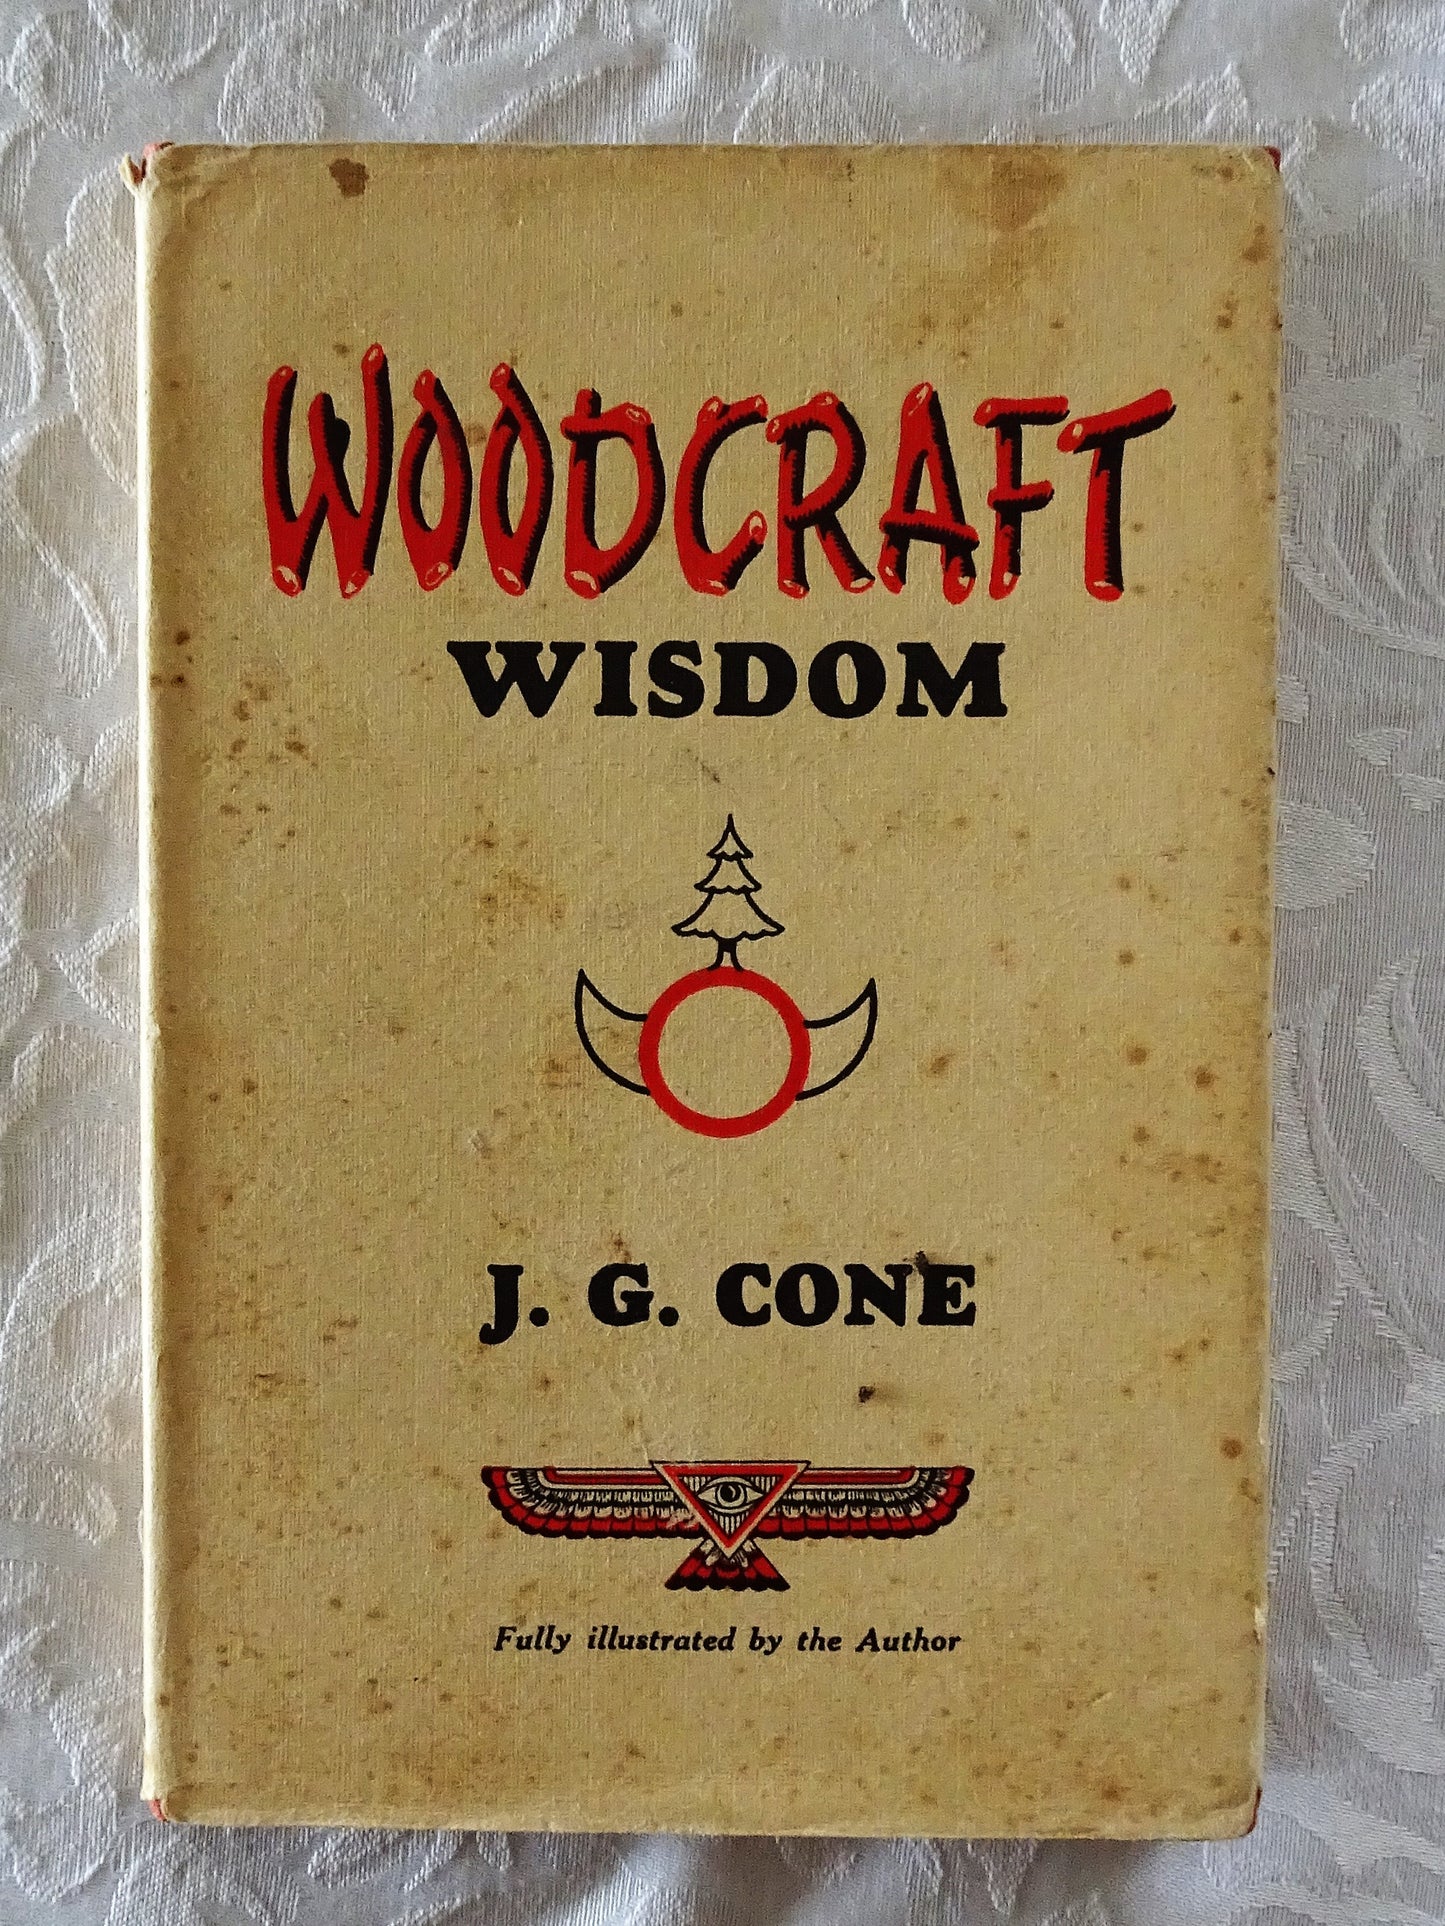 Woodcraft Wisdom by J. C. Cone